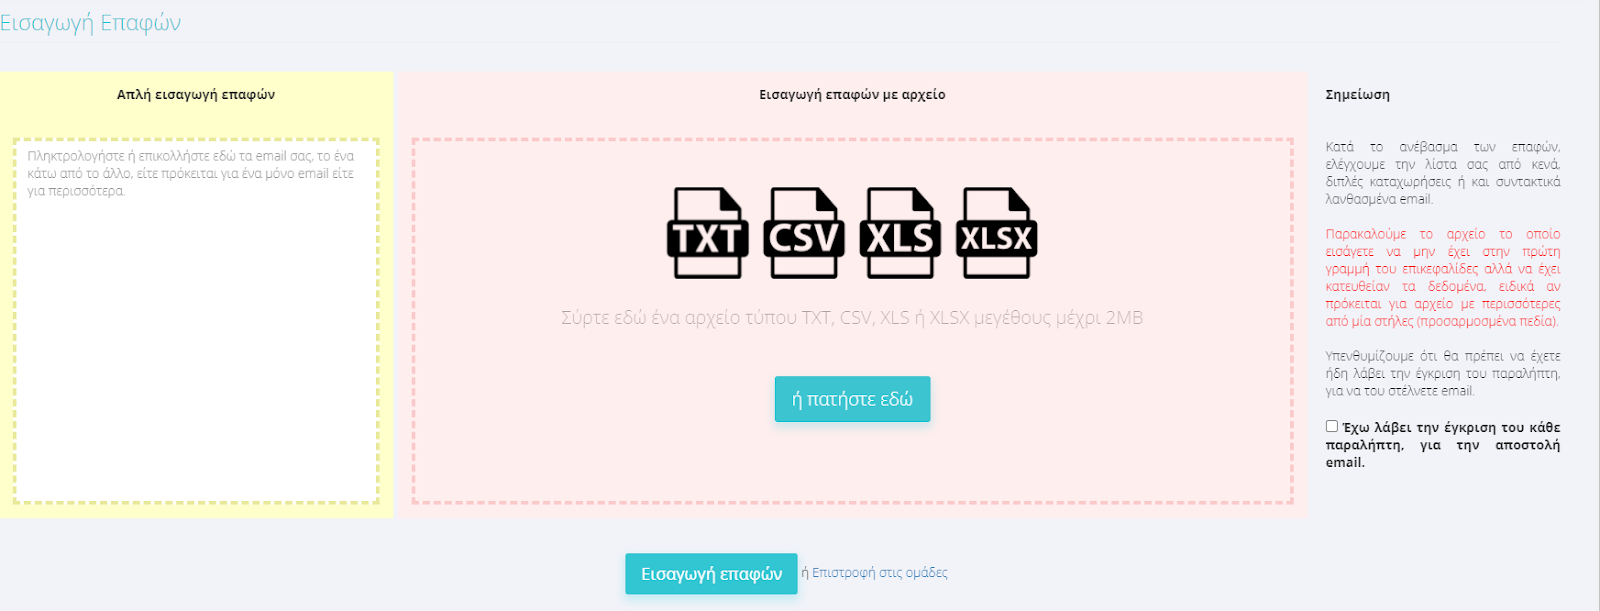 Συμβατοί τύποι αρχείων: TXT, CSV, XLS, XLSX